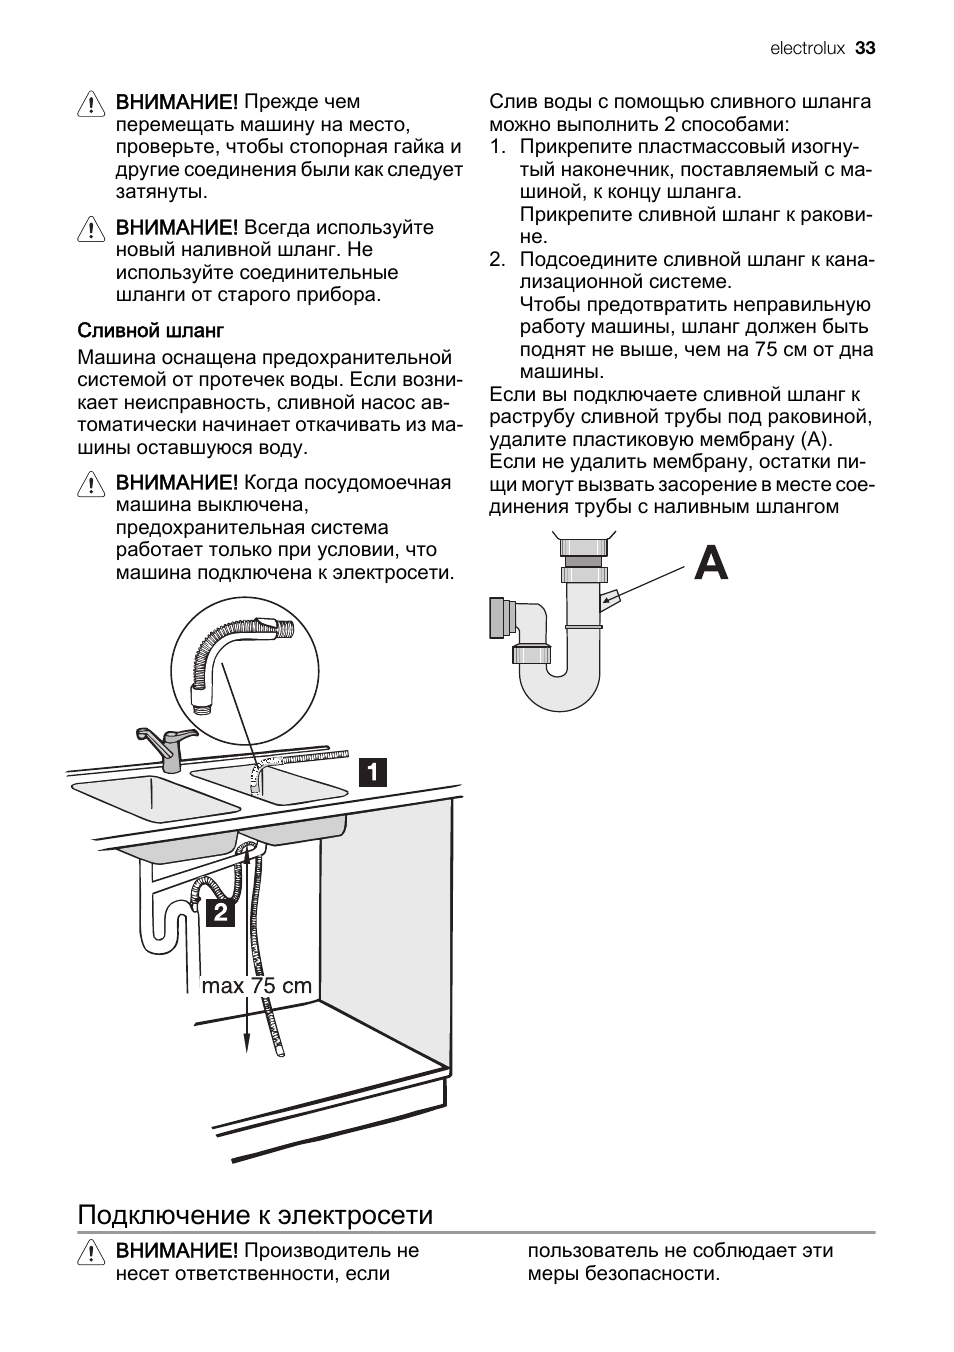 Схема подключения посудомоечной машины Электролюкс